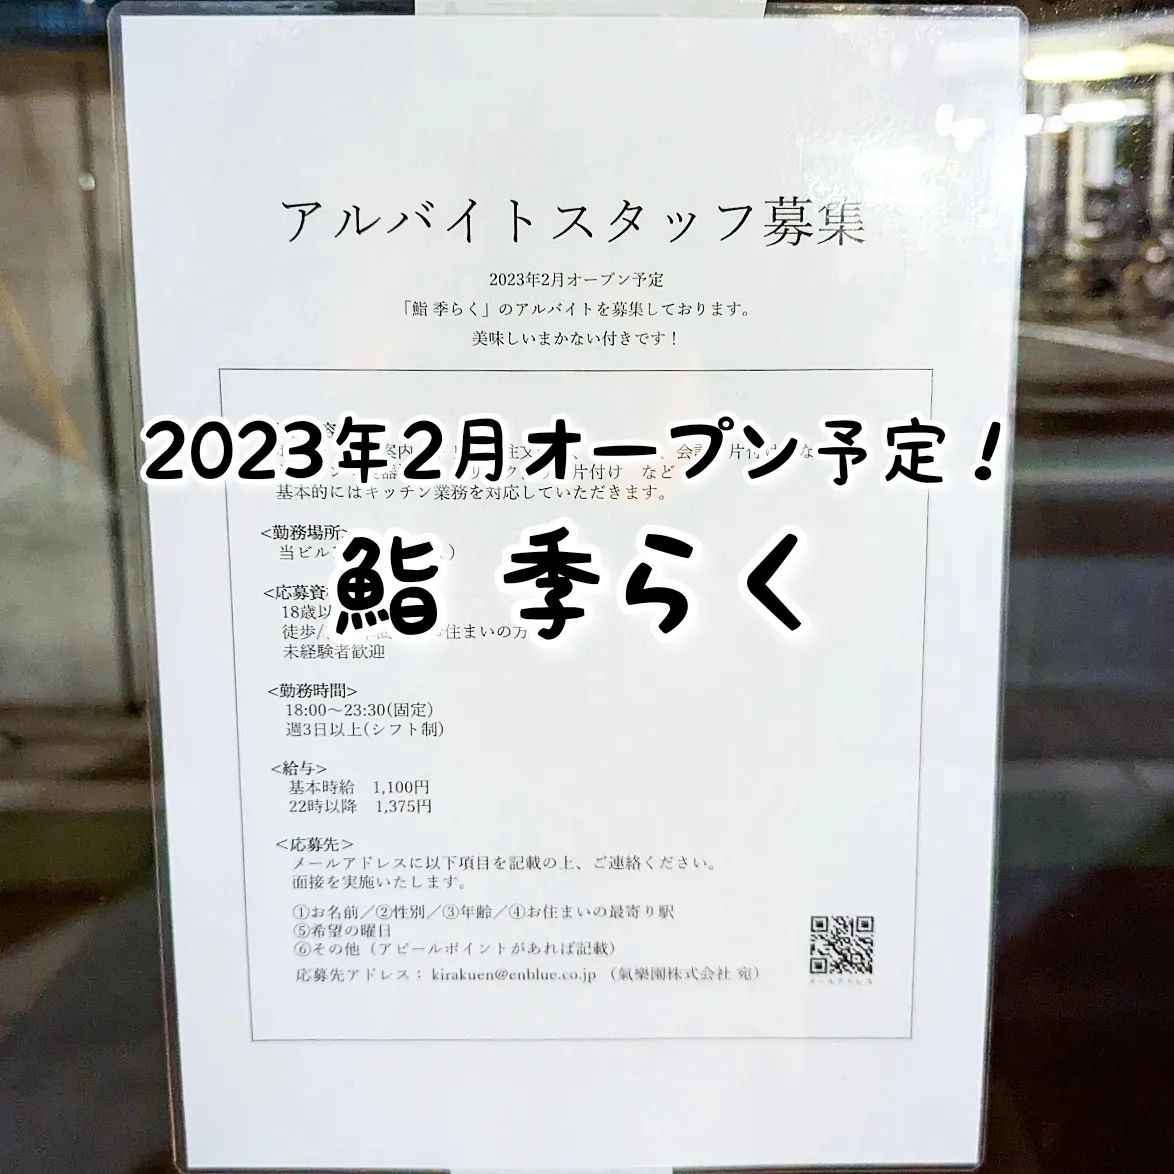 #武蔵小山新店情報「 #鮨季らく 」2023年2月オープン予定！どんなお寿司屋か楽しみでございますな！場所は、武蔵小山駅から西小山方向に進みミスタードーナツを通り過ぎて26号線を越え、武蔵小山緑道公園の近くでございますな。パティスリートゥルモンドや牛太郎の近くでございますね。【侍猫を応援】メインサイトも応援クリックお願いします！次の武蔵小山グルメ探しの励みになります！※メインサイトへの移動はプロフィールのURLが簡単！（地図あり）→ @musashikoyama.news →https://musashikoyama.samuraicat.jp/ 【案件＆情報】仕事の依頼やグルメ情報はお気軽にメッセージください！#武蔵小山 #武蔵小山情報 #武蔵小山ランチ #武蔵小山商店街  #武蔵小山グルメ #武蔵小山カフェ #西小山 #戸越銀座 #不動前 #碑文谷 #戸越 #中延  #荏原中延 #目黒本町 #品川 #品川区 #品川グルメ #目黒 #目黒区 #目黒グルメ #東京 #東京グルメ #新店 #新店オープン #武蔵小山新店 #武蔵小山オープン #鮨 #武蔵小山鮨